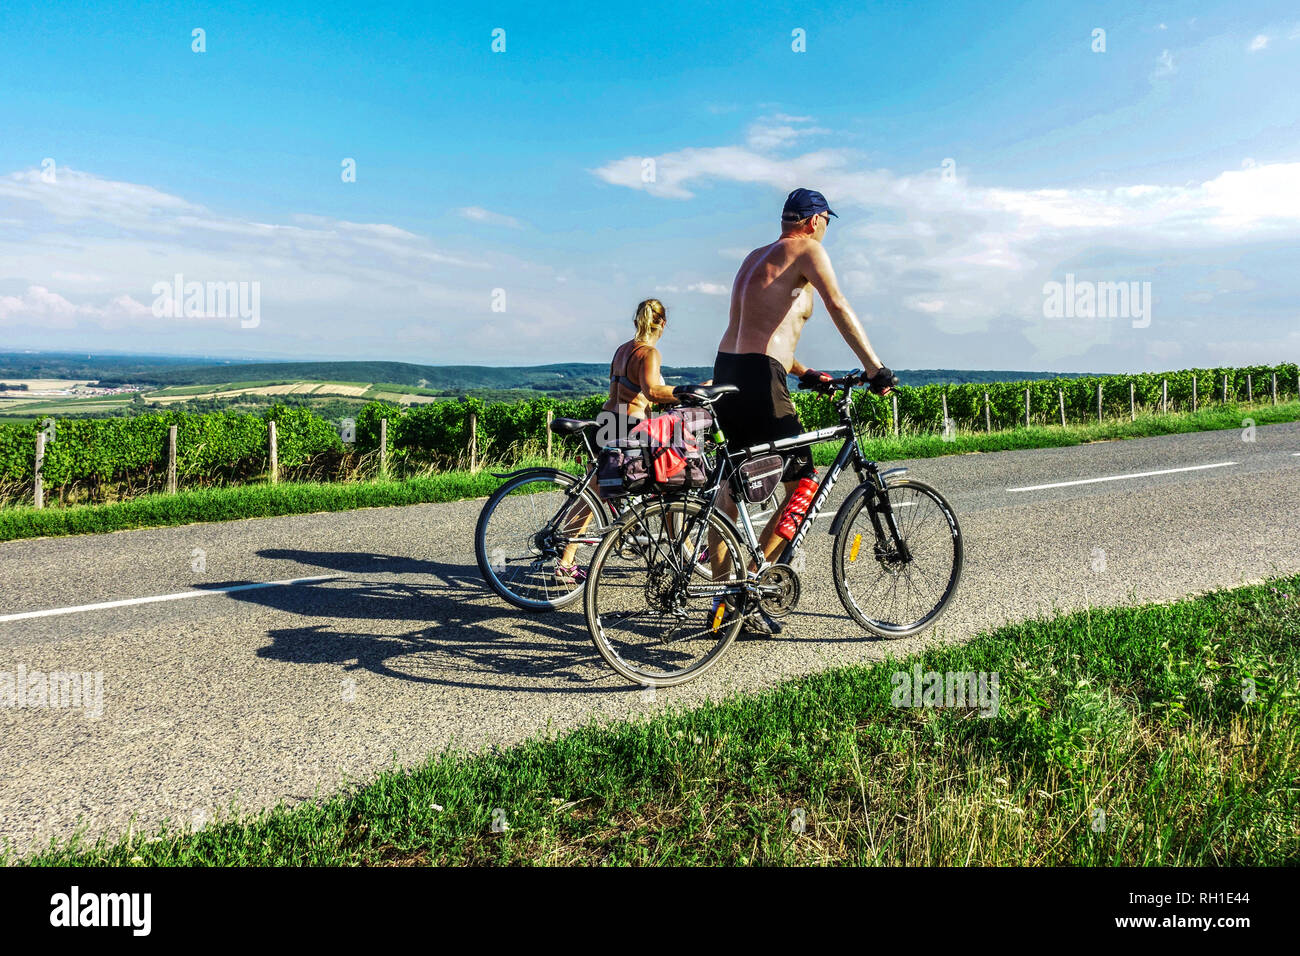 Deux motards montent un vélo sur une route entre les vignobles, route des vins moraves Palava, région de Mikulov, Moravie du Sud, République tchèque actif, personnes, cyclisme Banque D'Images